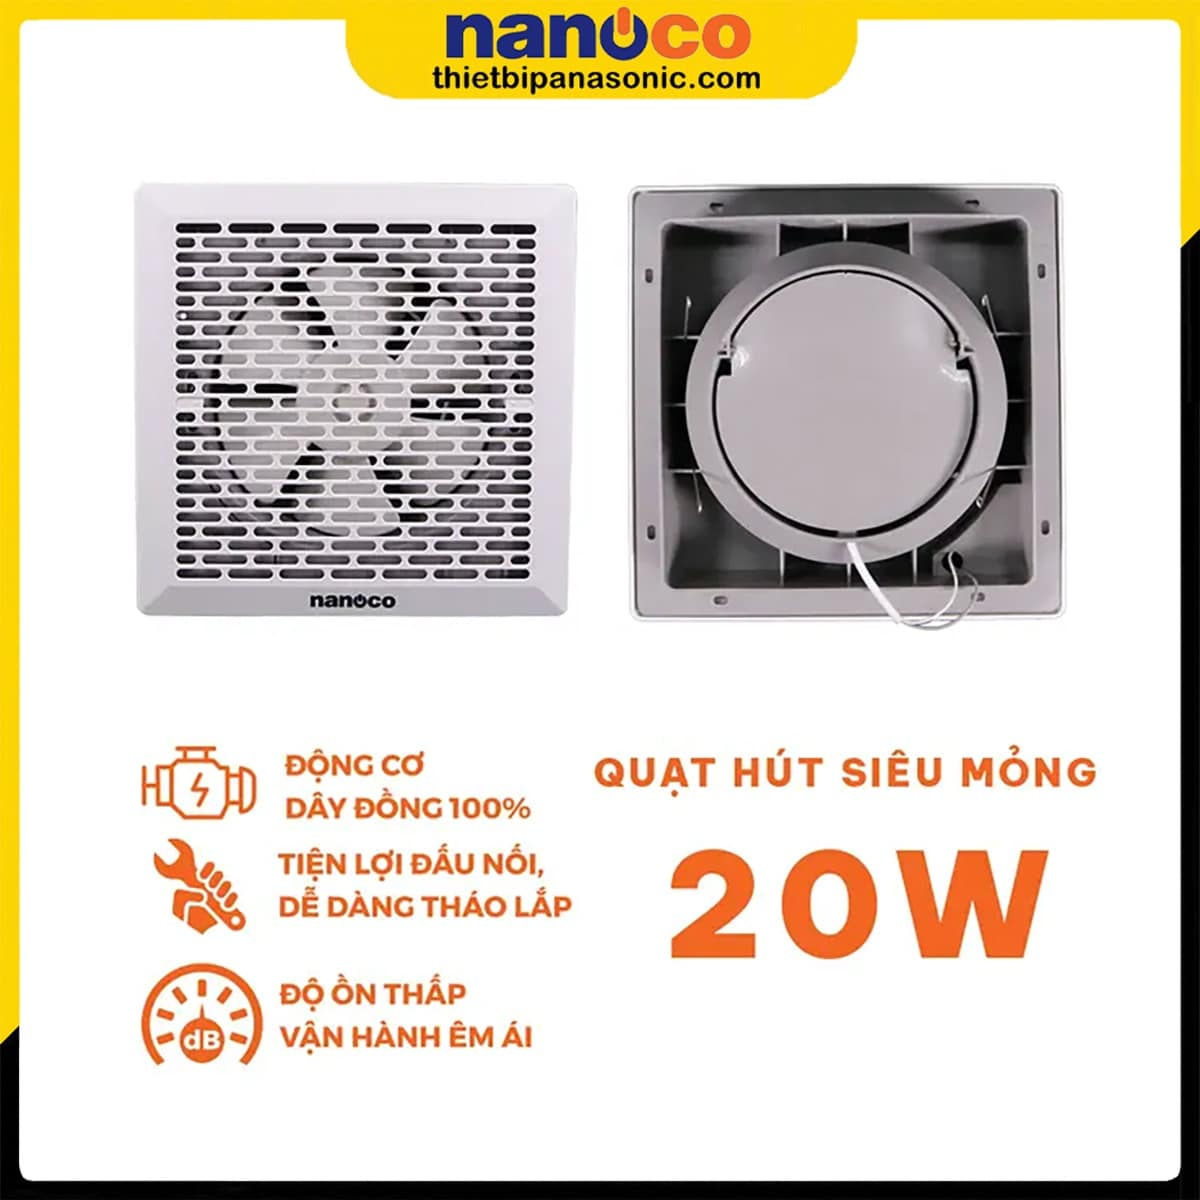 Những ưu điểm của Quạt hút siêu mỏng Nanoco NMV2023